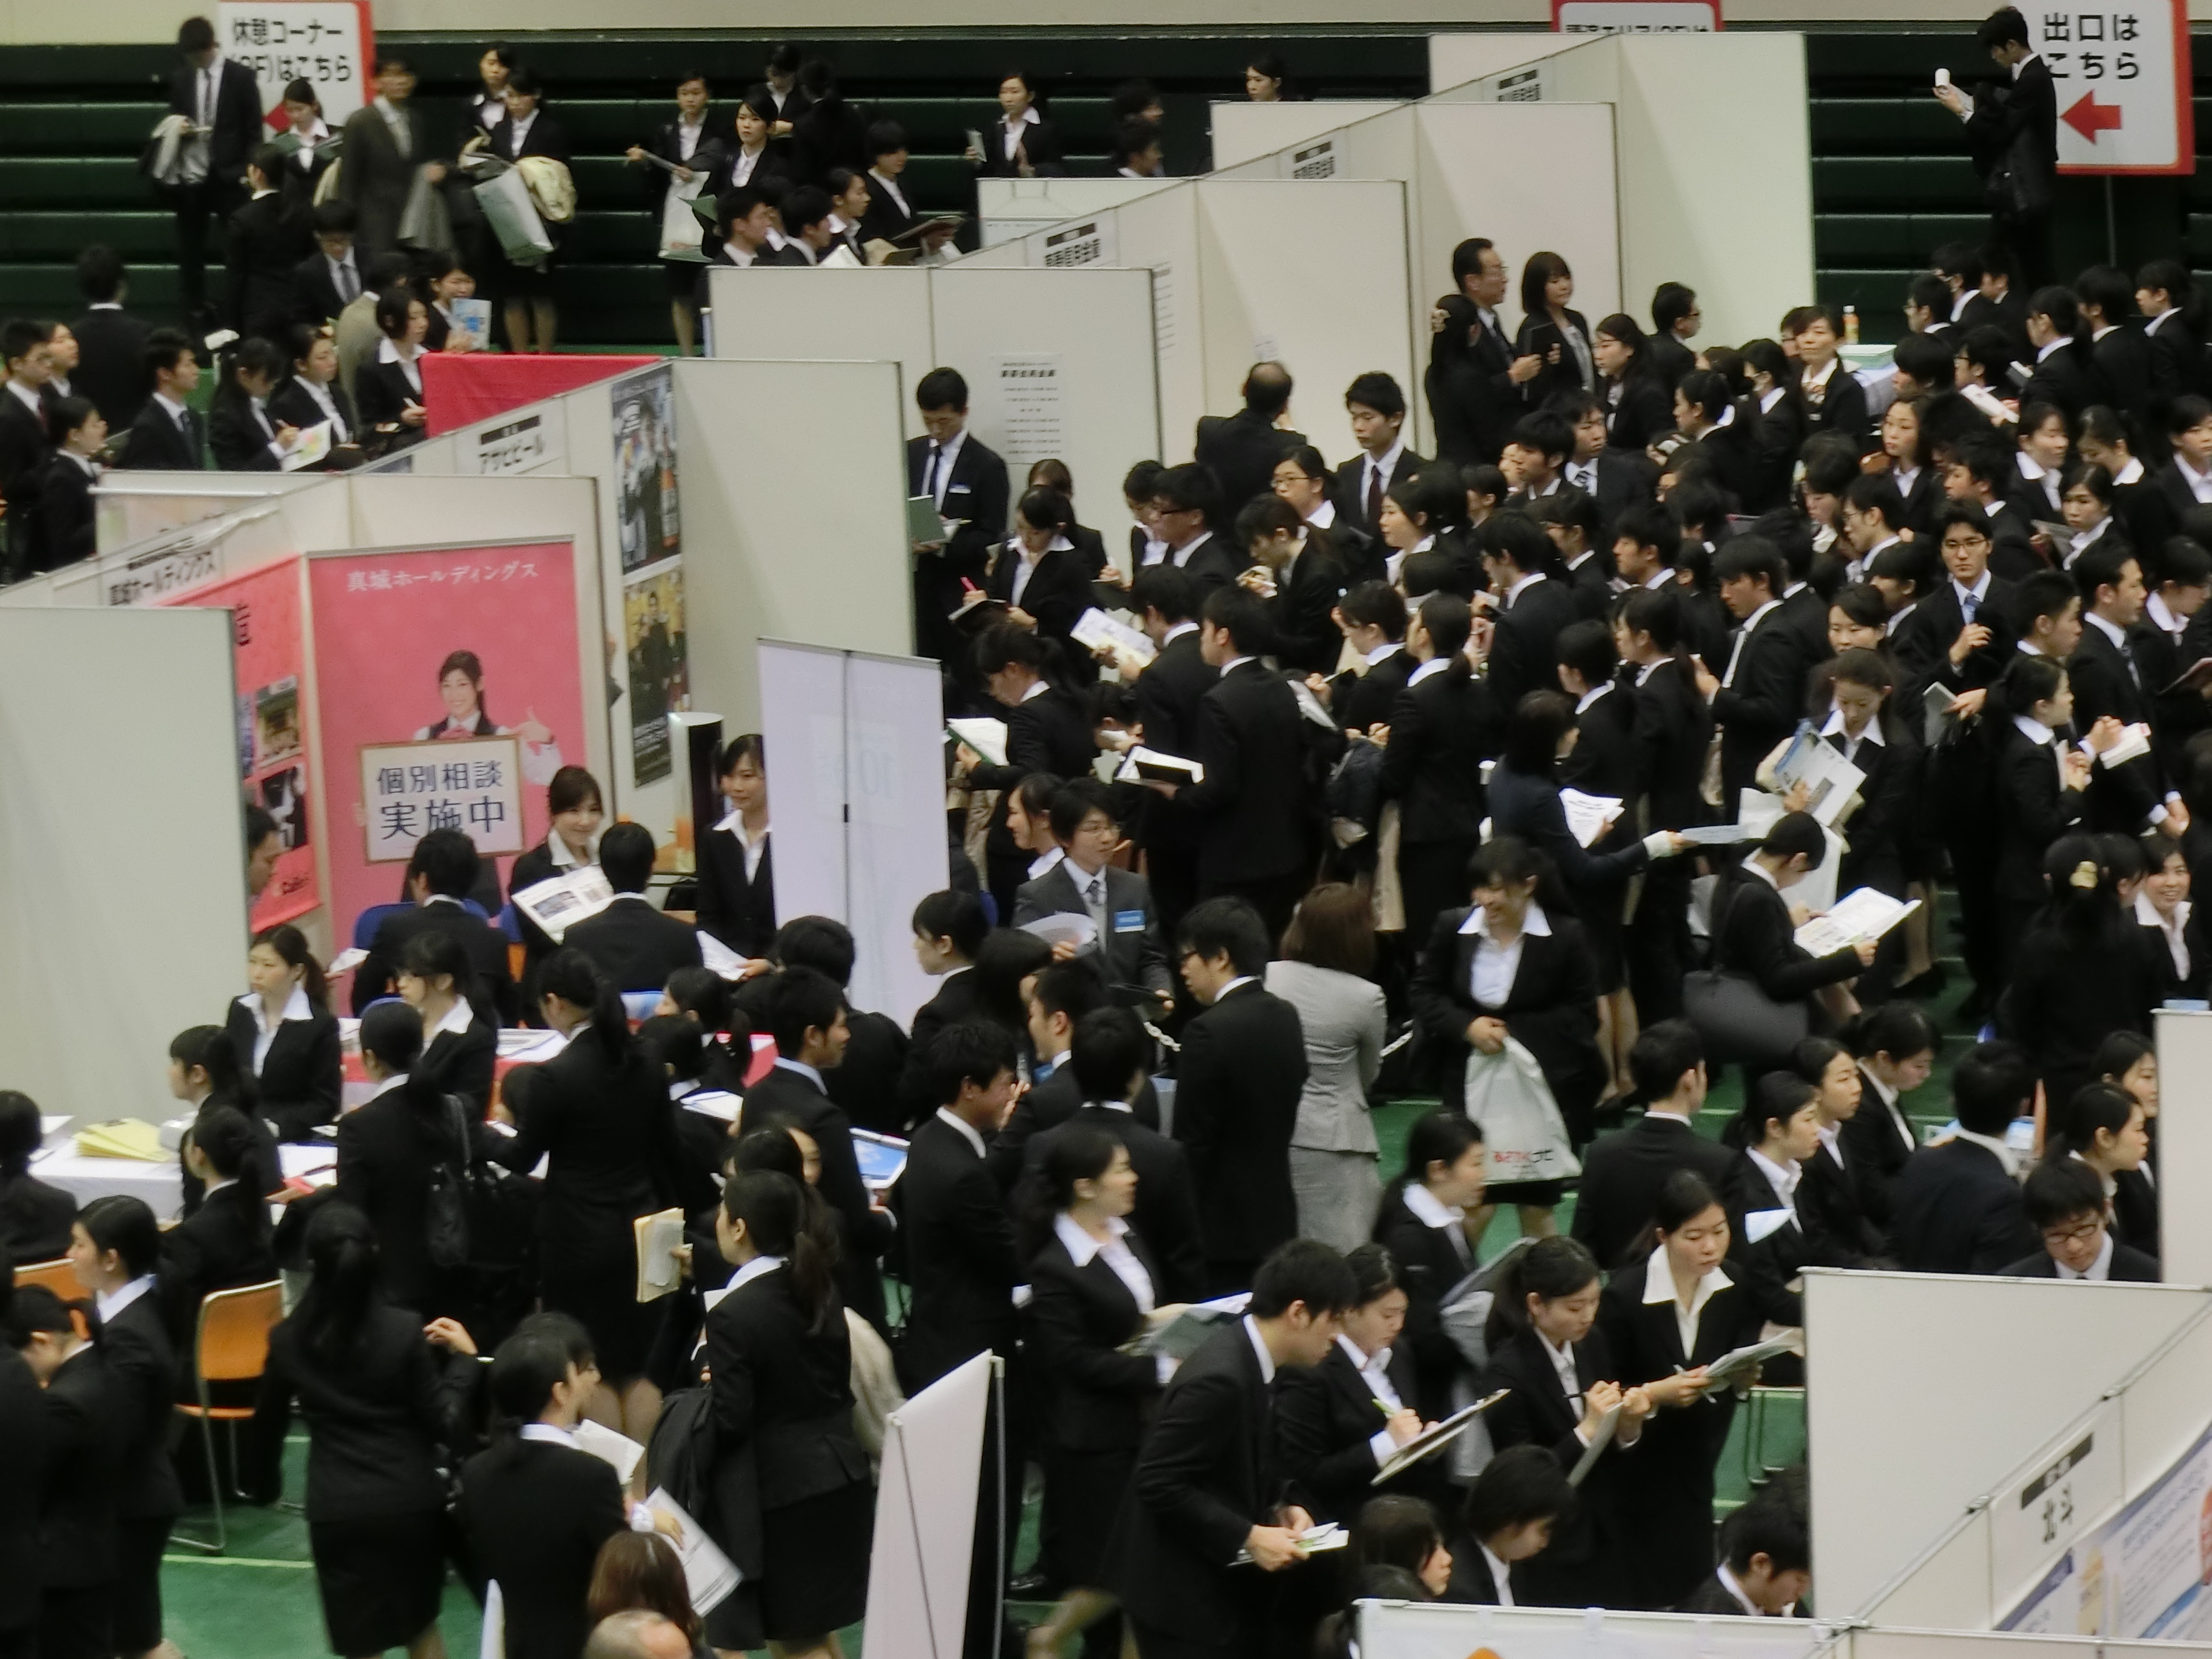 17年新卒就活イベント 福岡で3 24に開催 就活解禁１ヵ月後の学生 企業の動きを取材するなら是非このイベントへお越しください 株式会社学情のプレスリリース